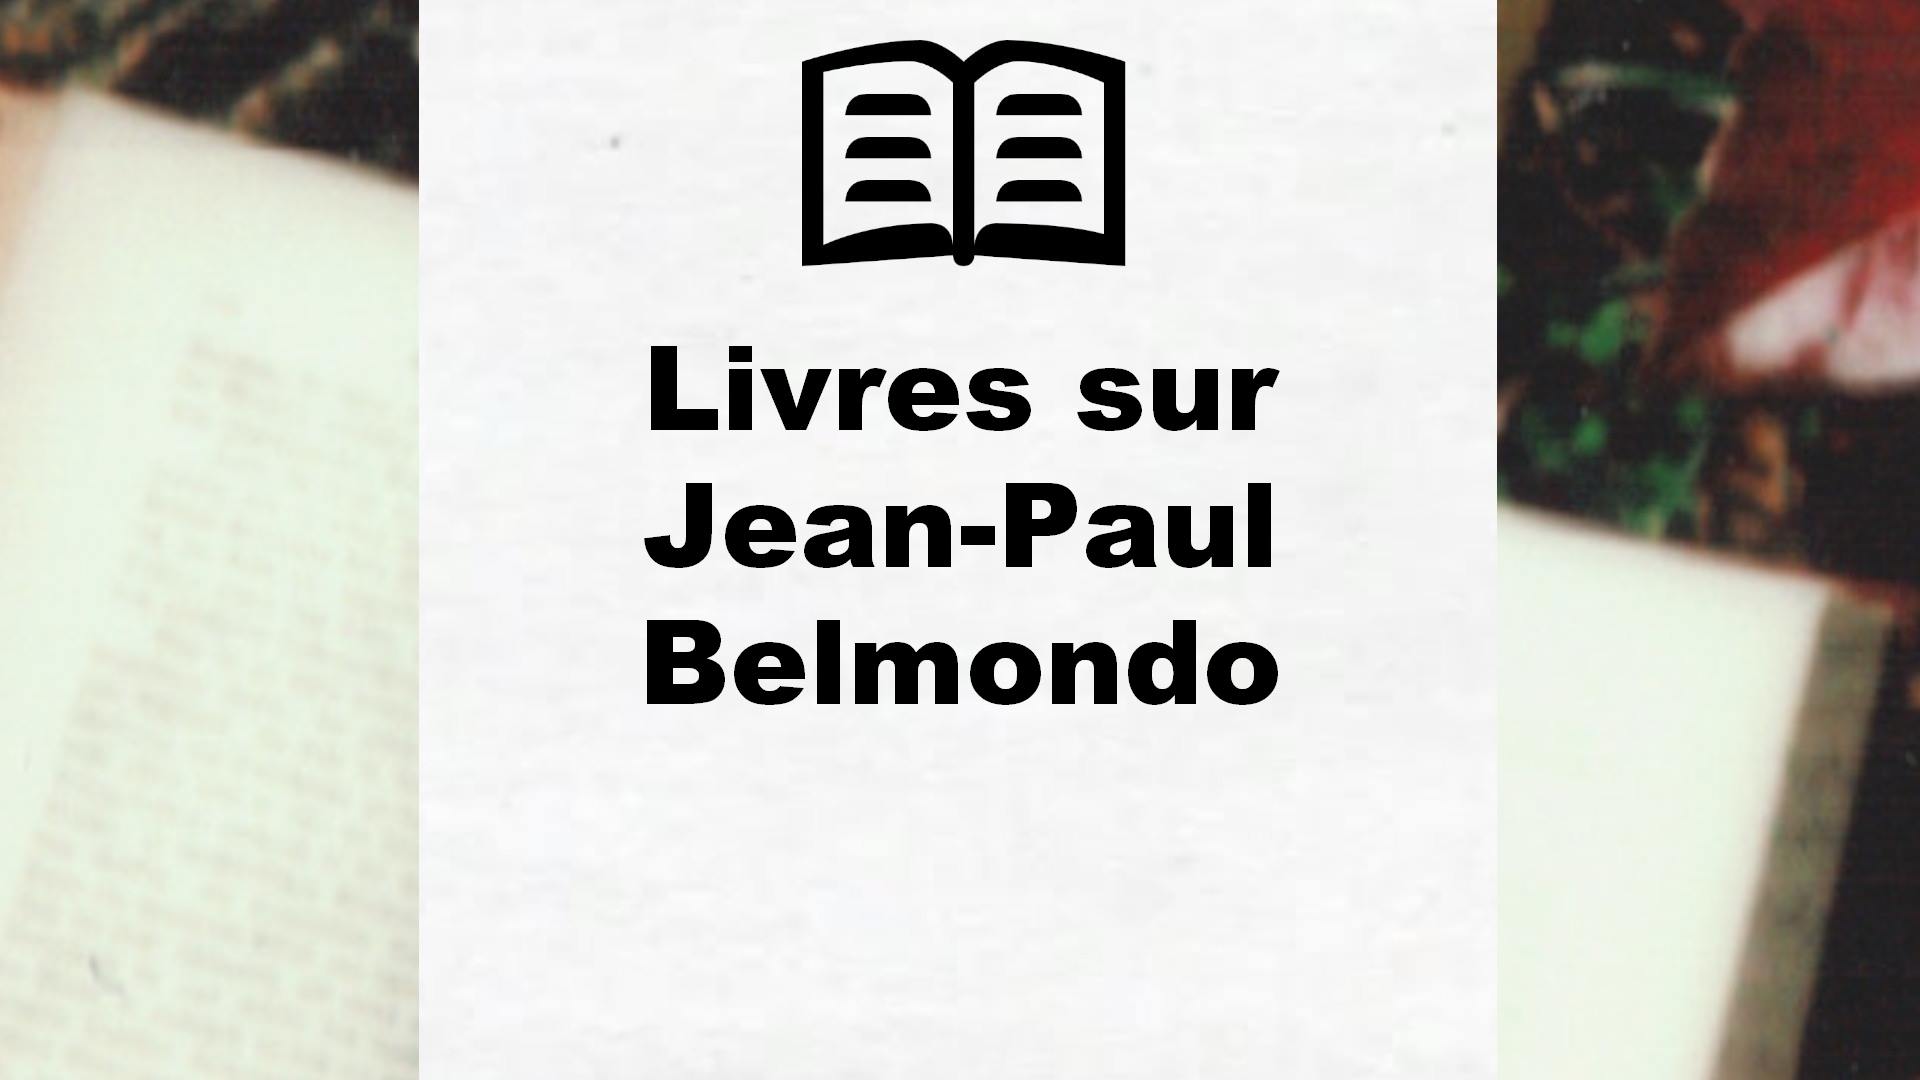 Livres sur Jean-Paul Belmondo